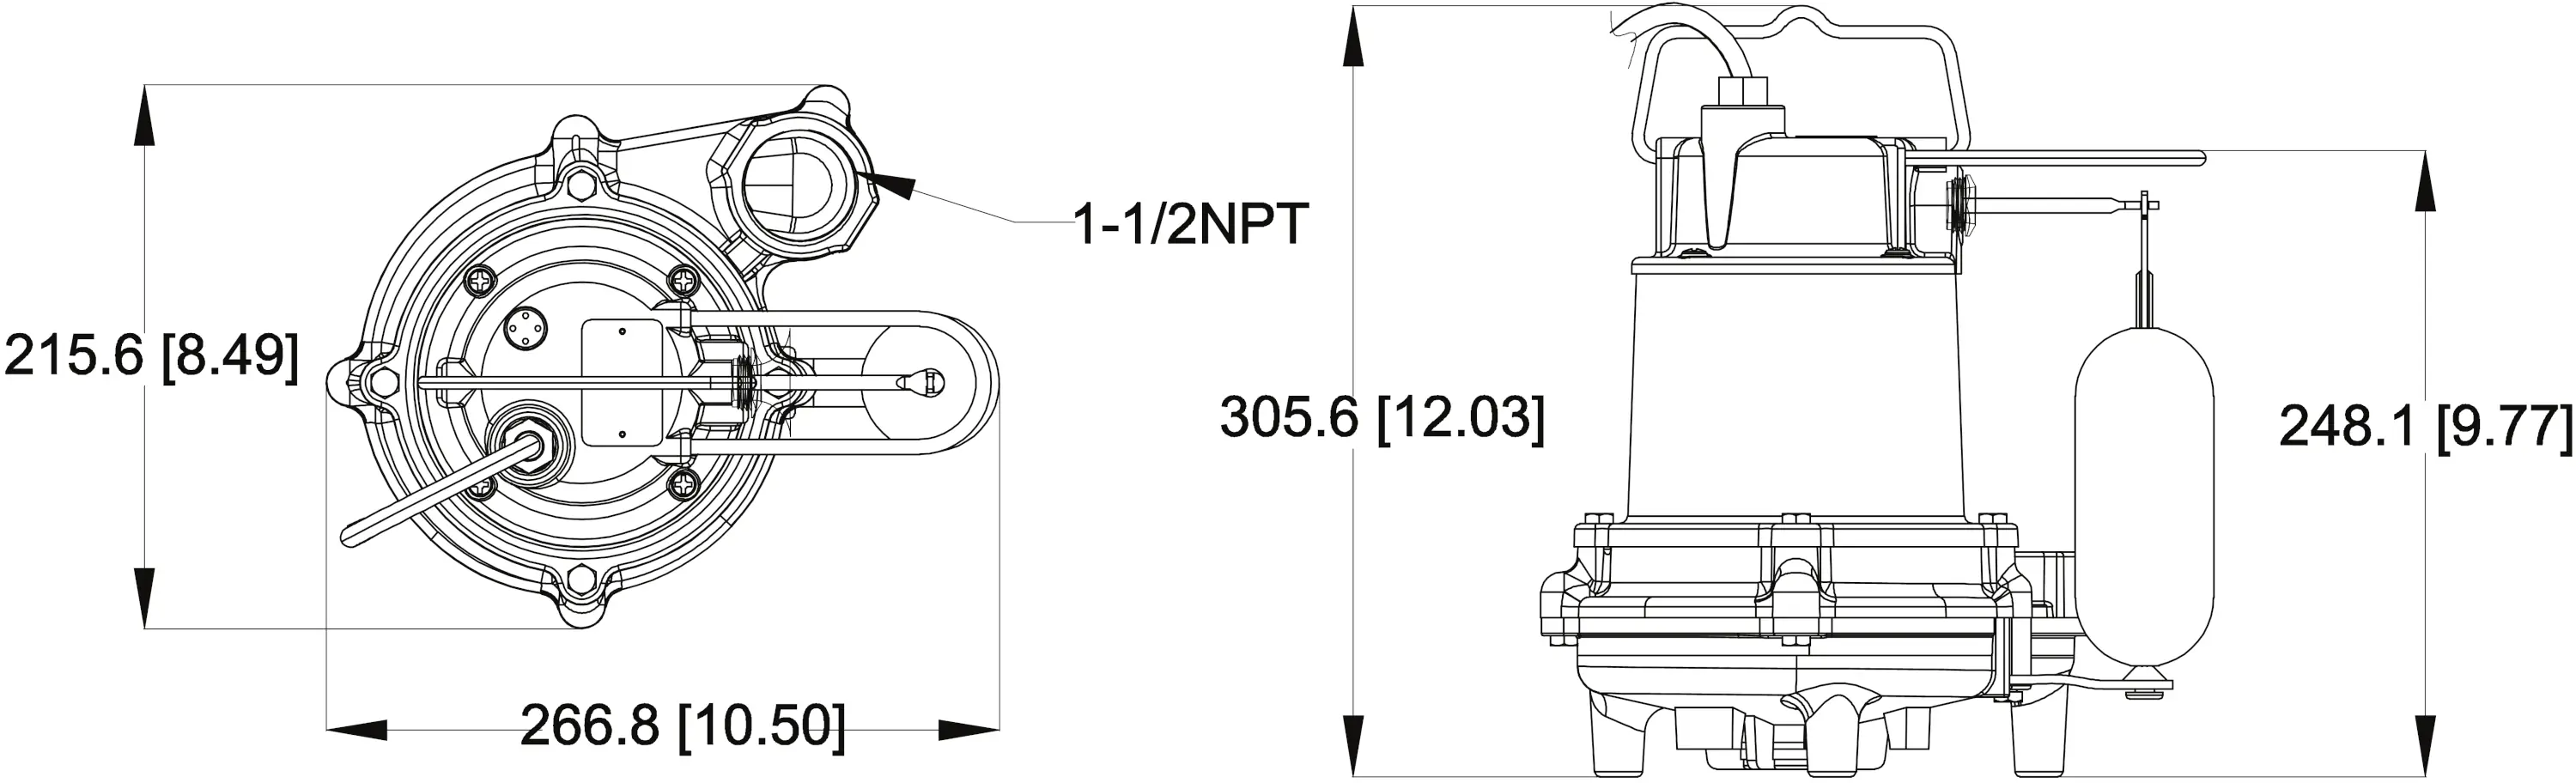 SPV33 Pump Dimensions